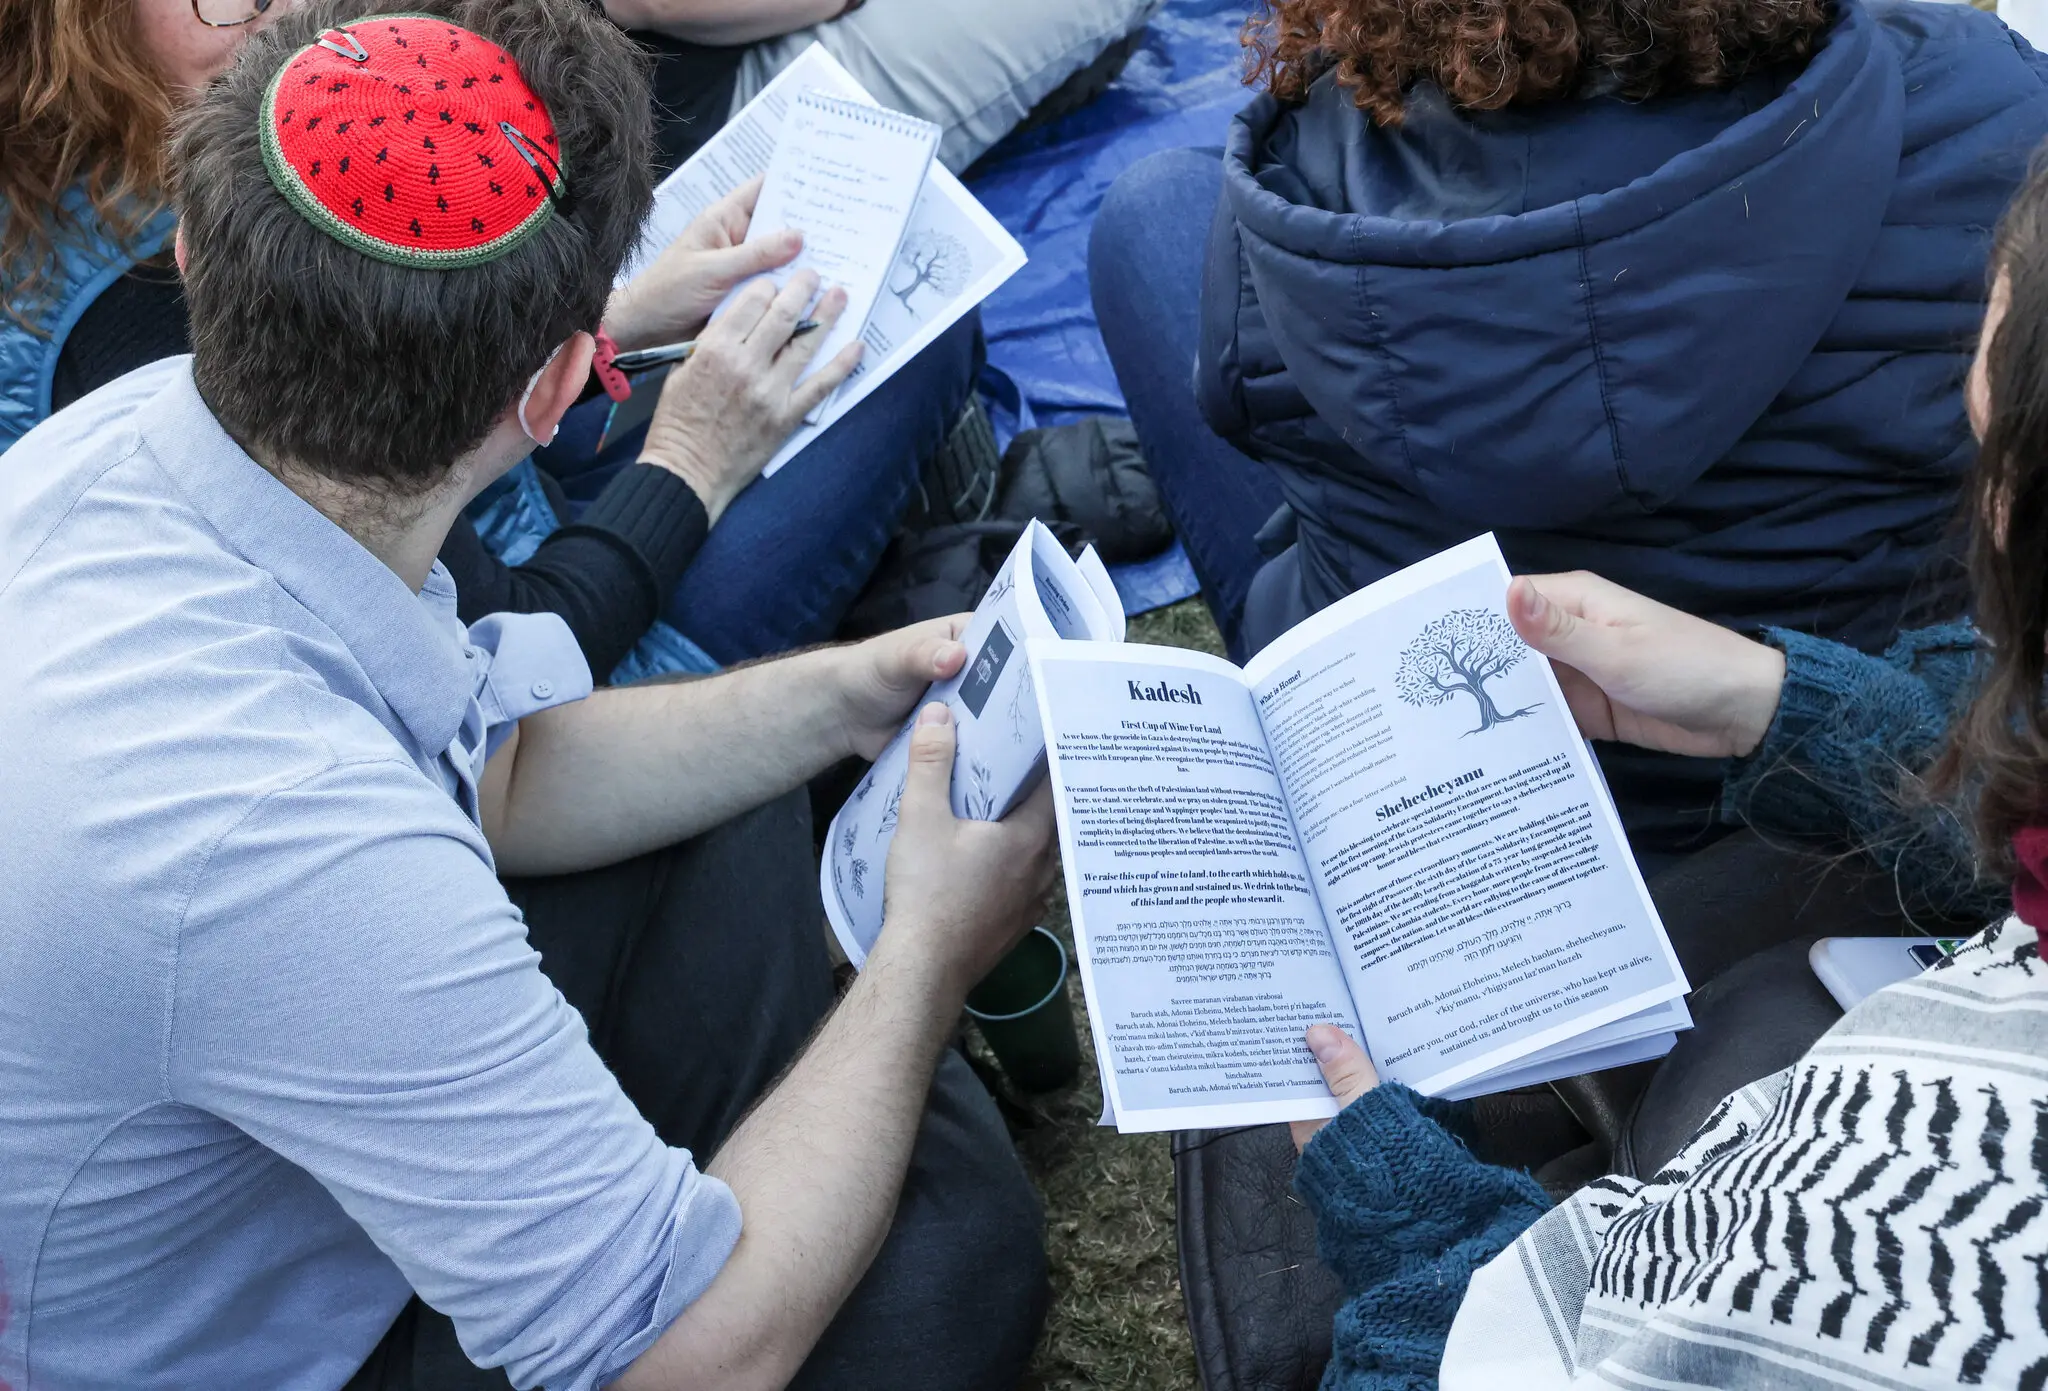 متظاهر يهودي مؤيد لفلسطين يظهر وهو يلبس "الكيبا" على شكل بطيخ